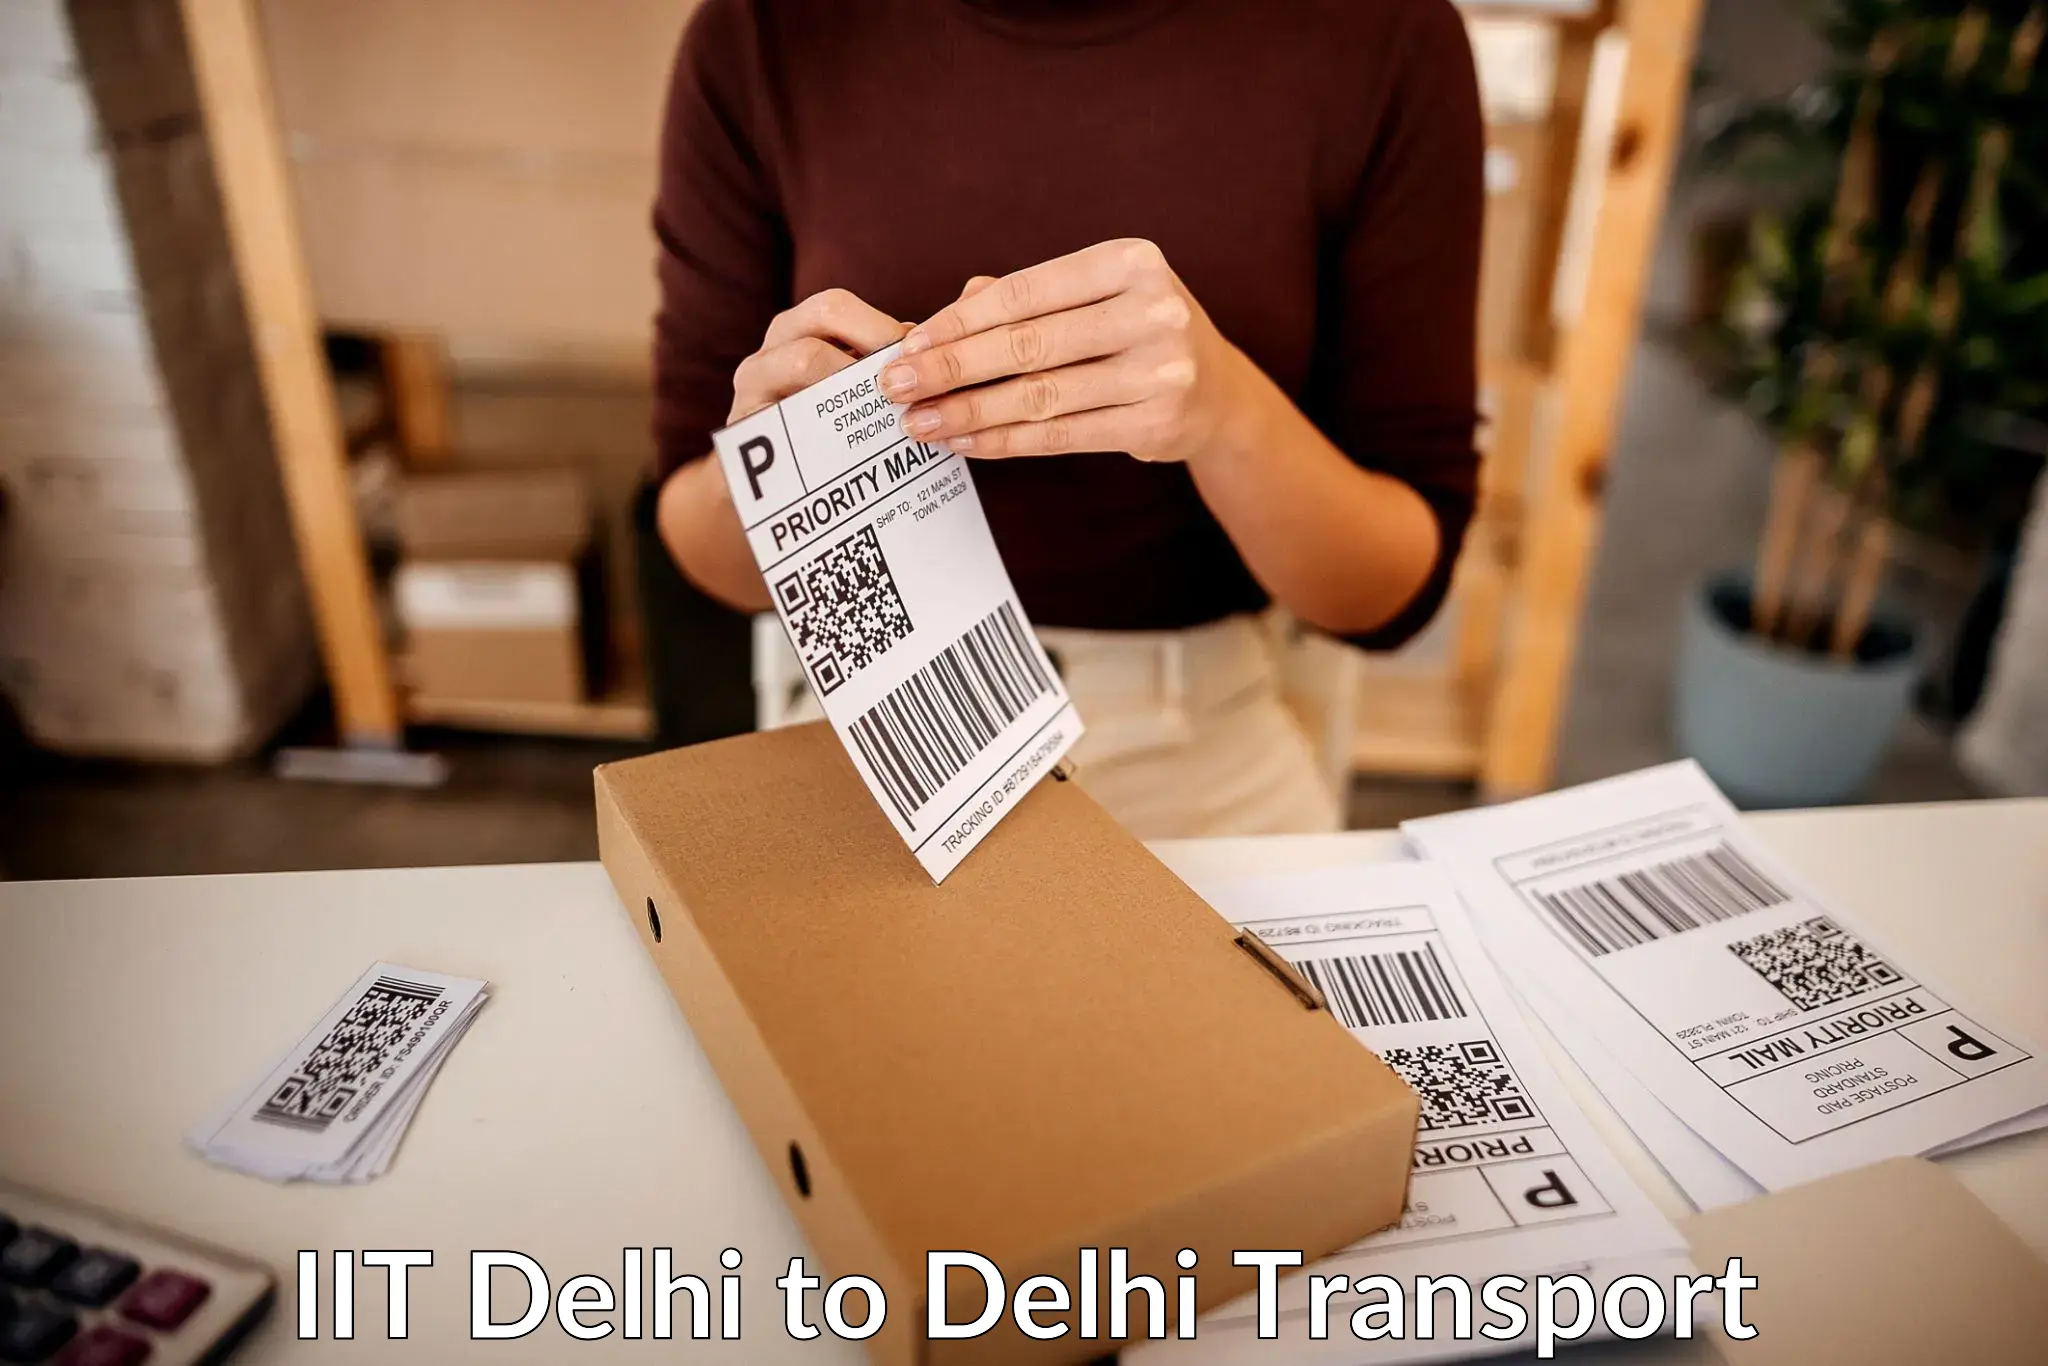 Furniture transport service IIT Delhi to Delhi